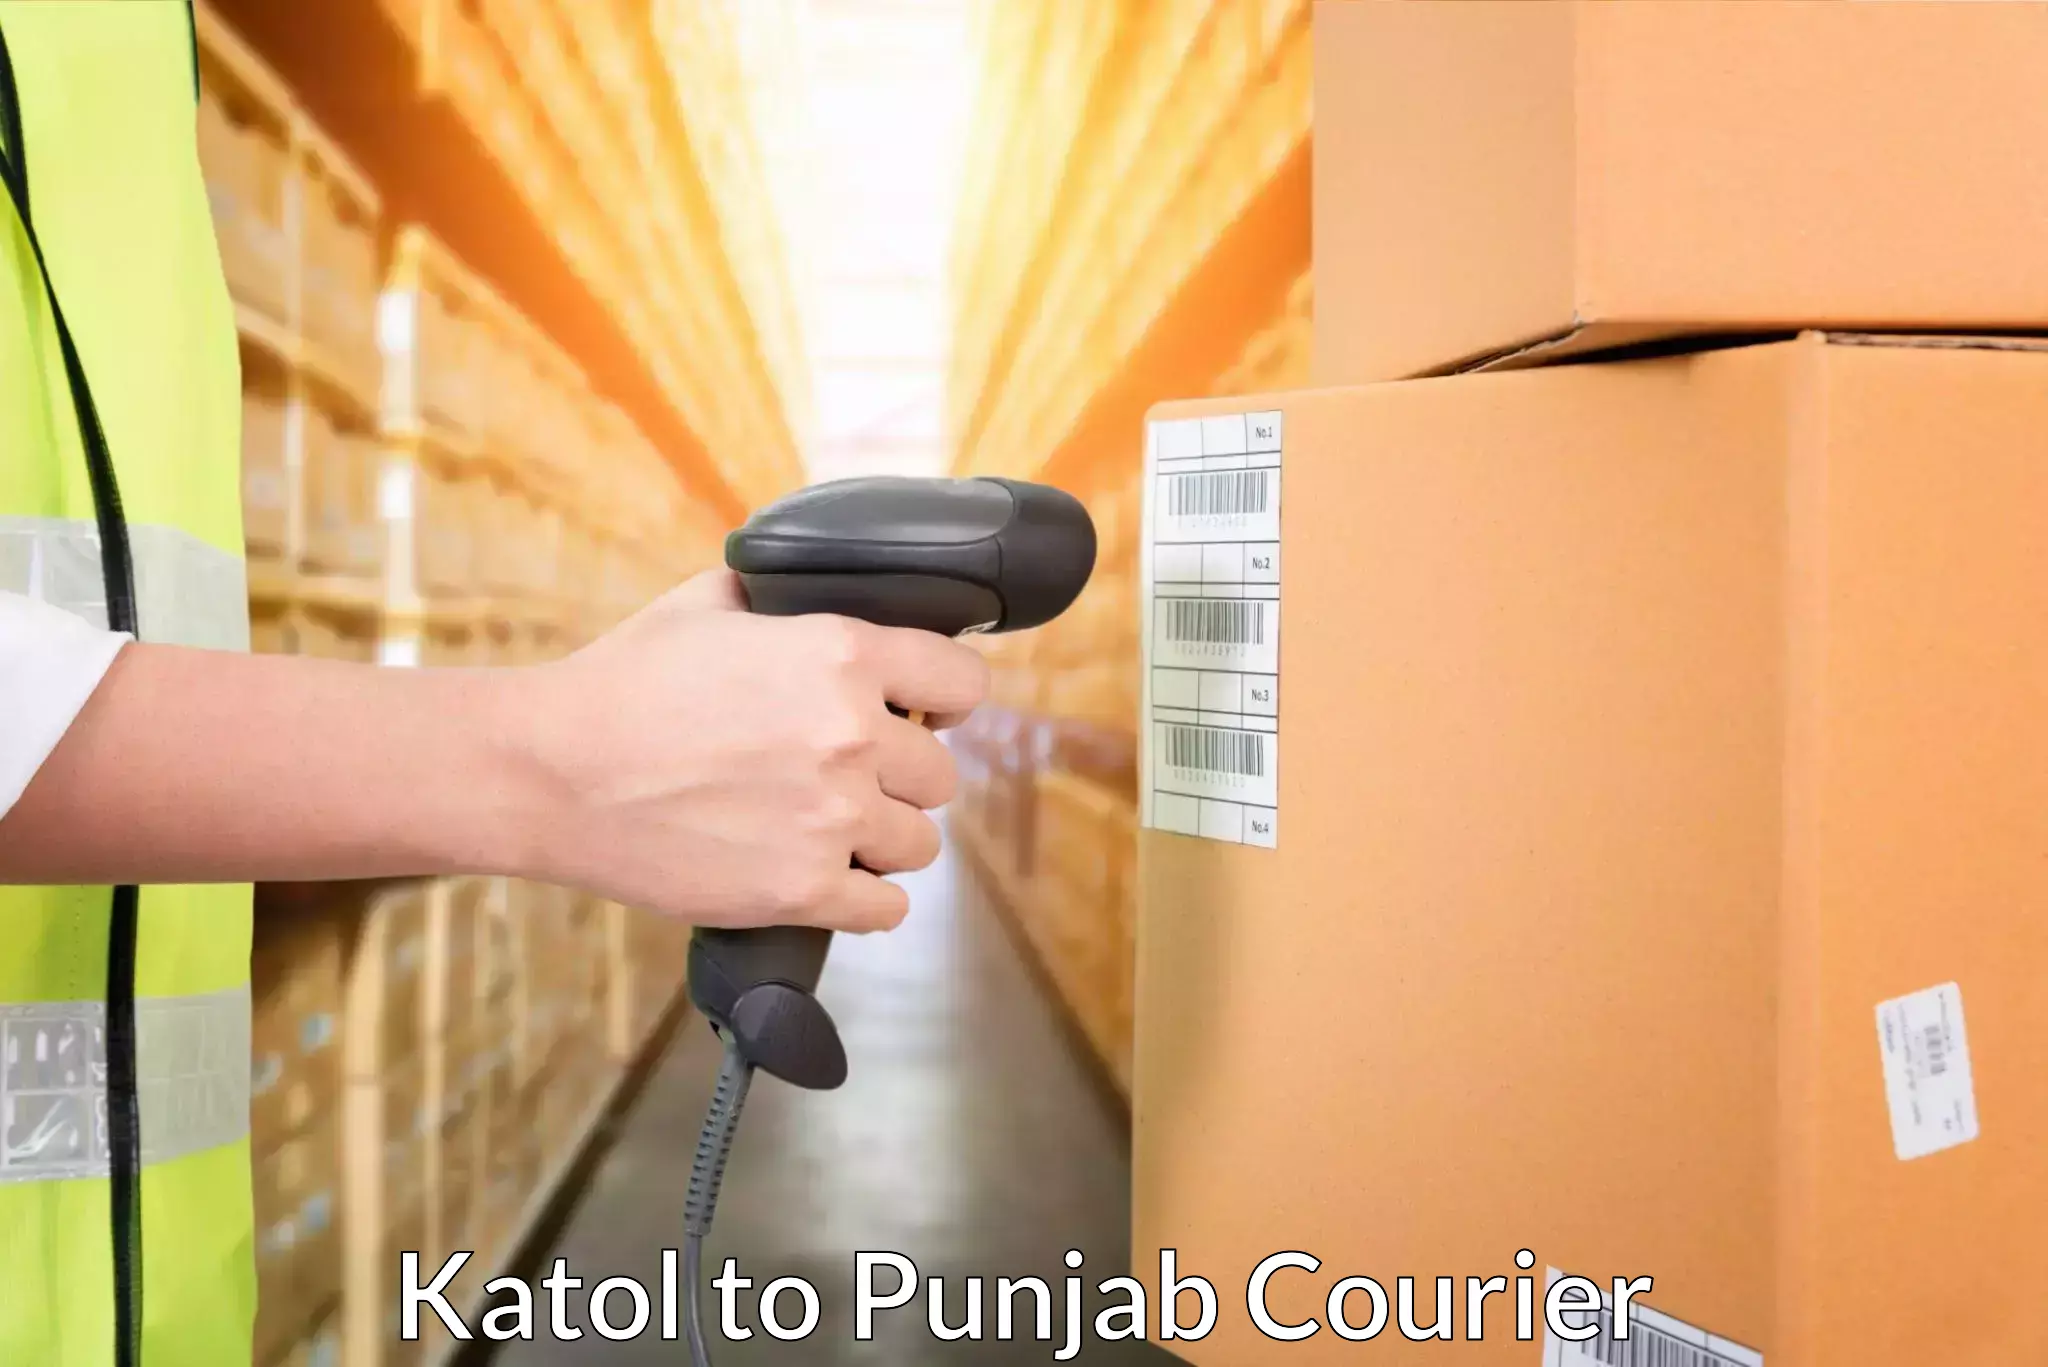 Lightweight courier Katol to Punjab